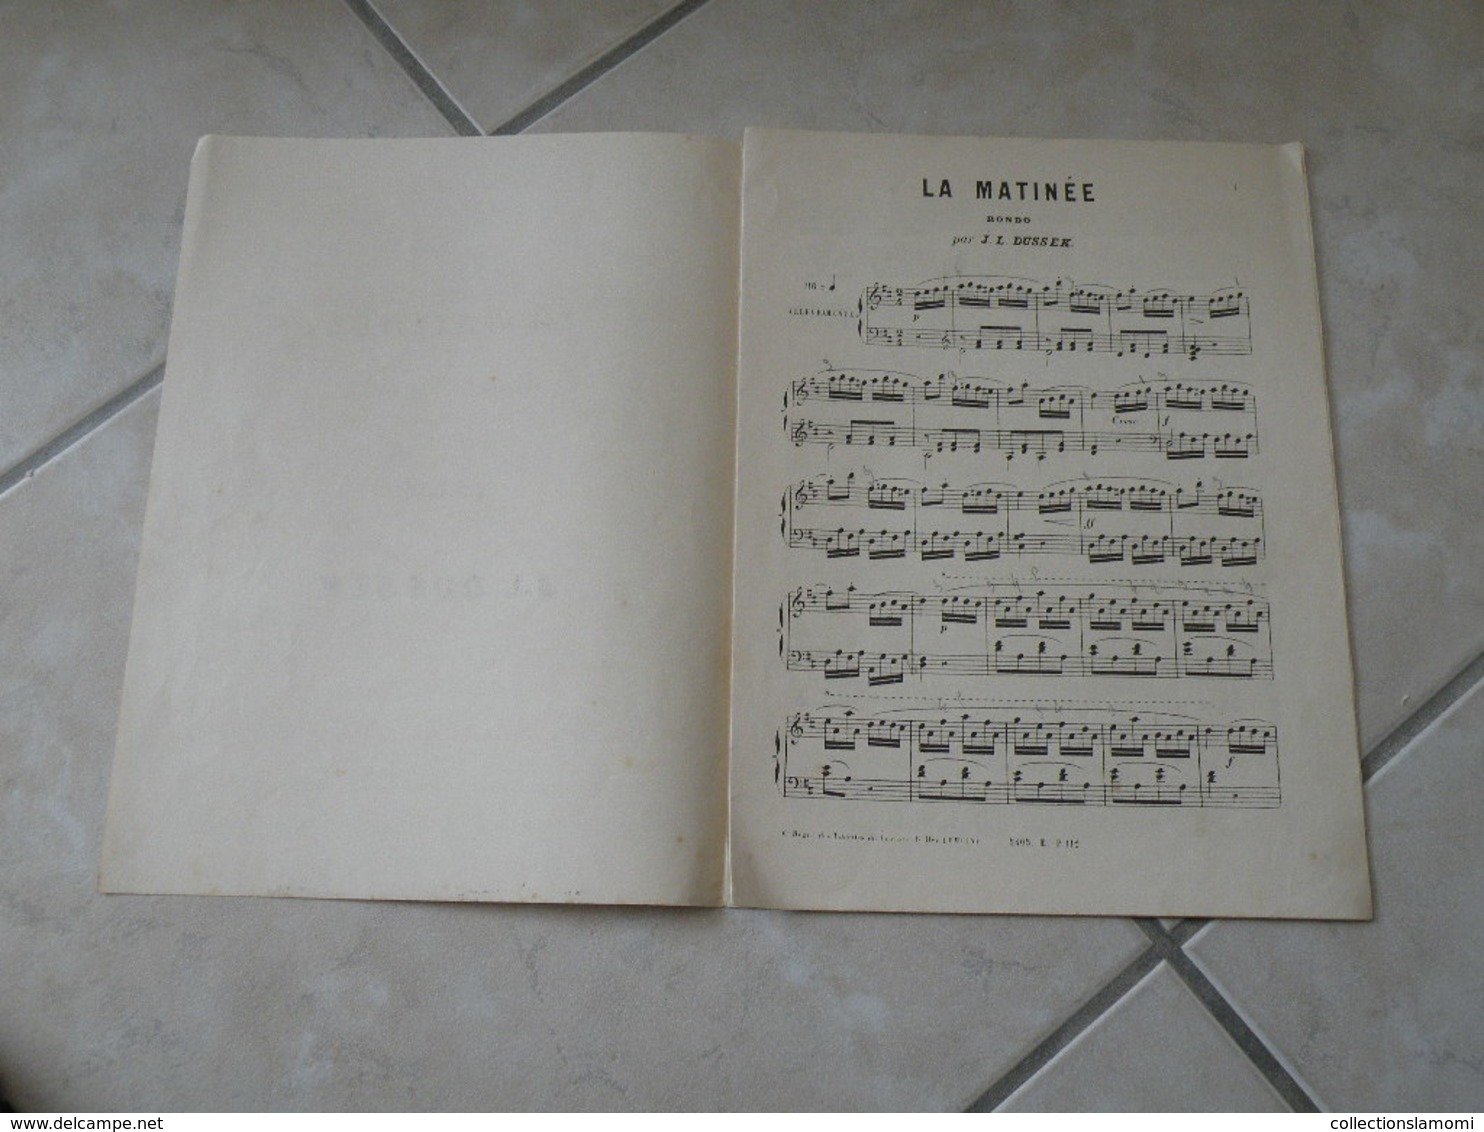 La Matinée - Rondo Favori - Musique Classique Piano (J.L. Dussek) - Klavierinstrumenten